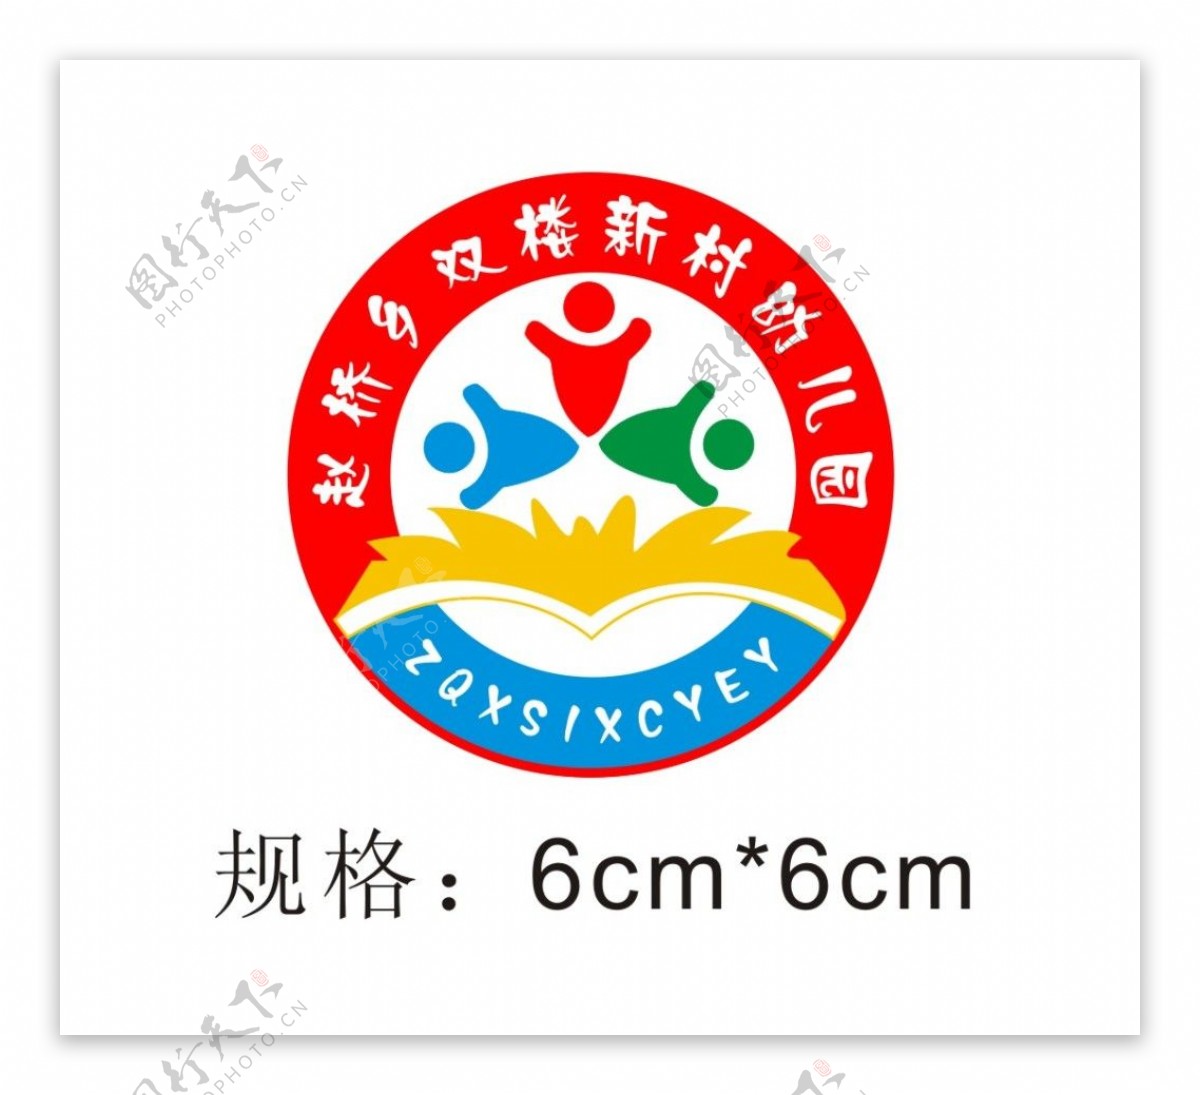 赵桥乡双楼新村幼儿园园徽logo